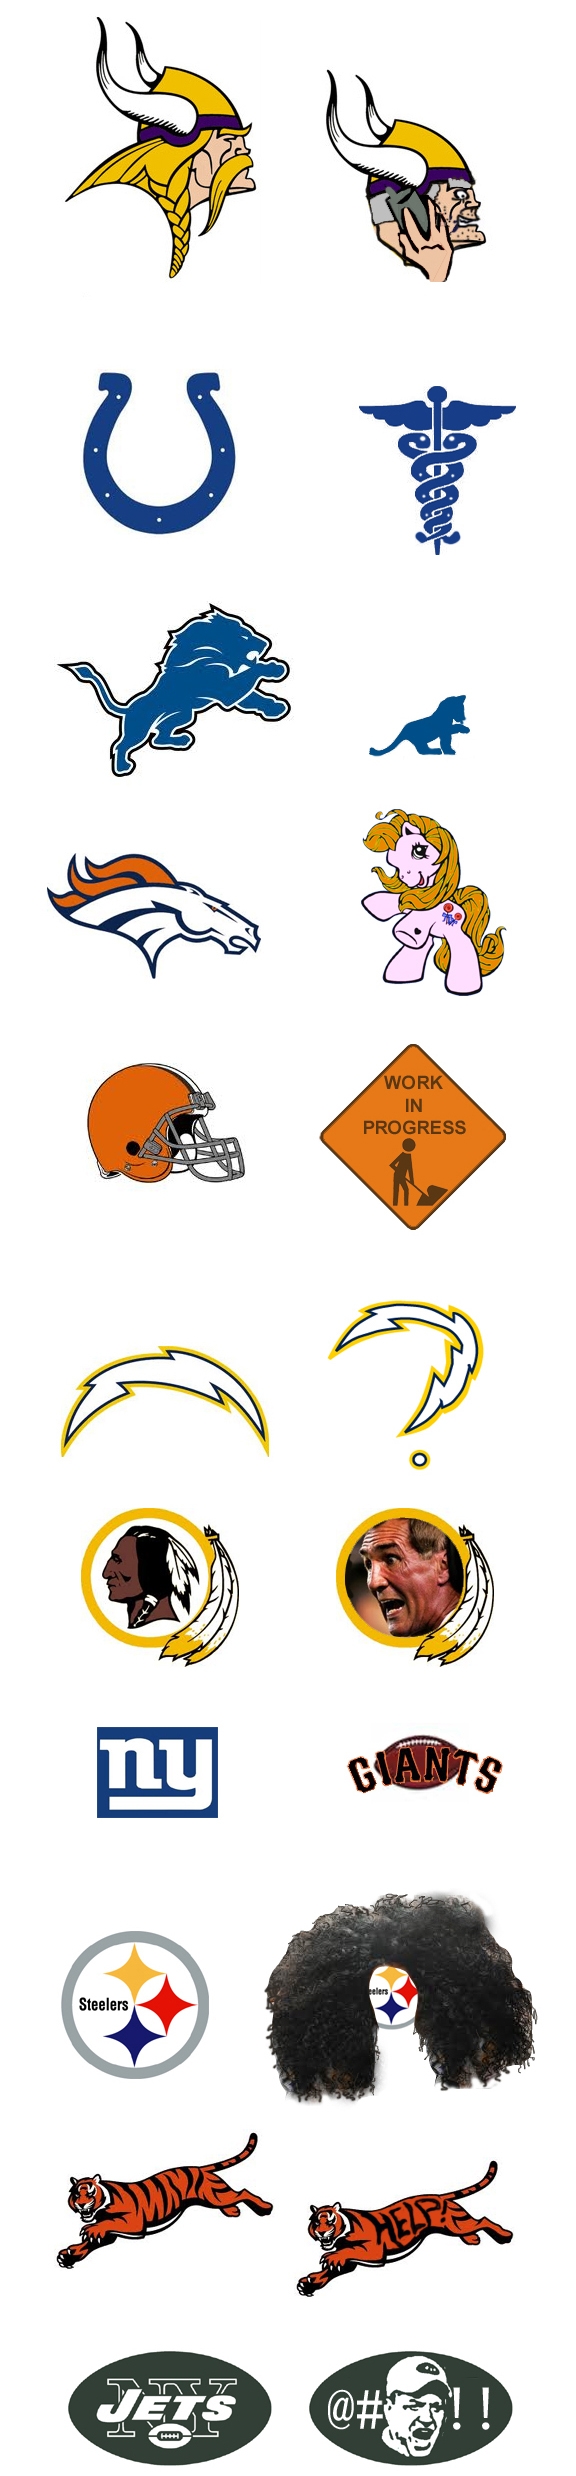 funny football logos